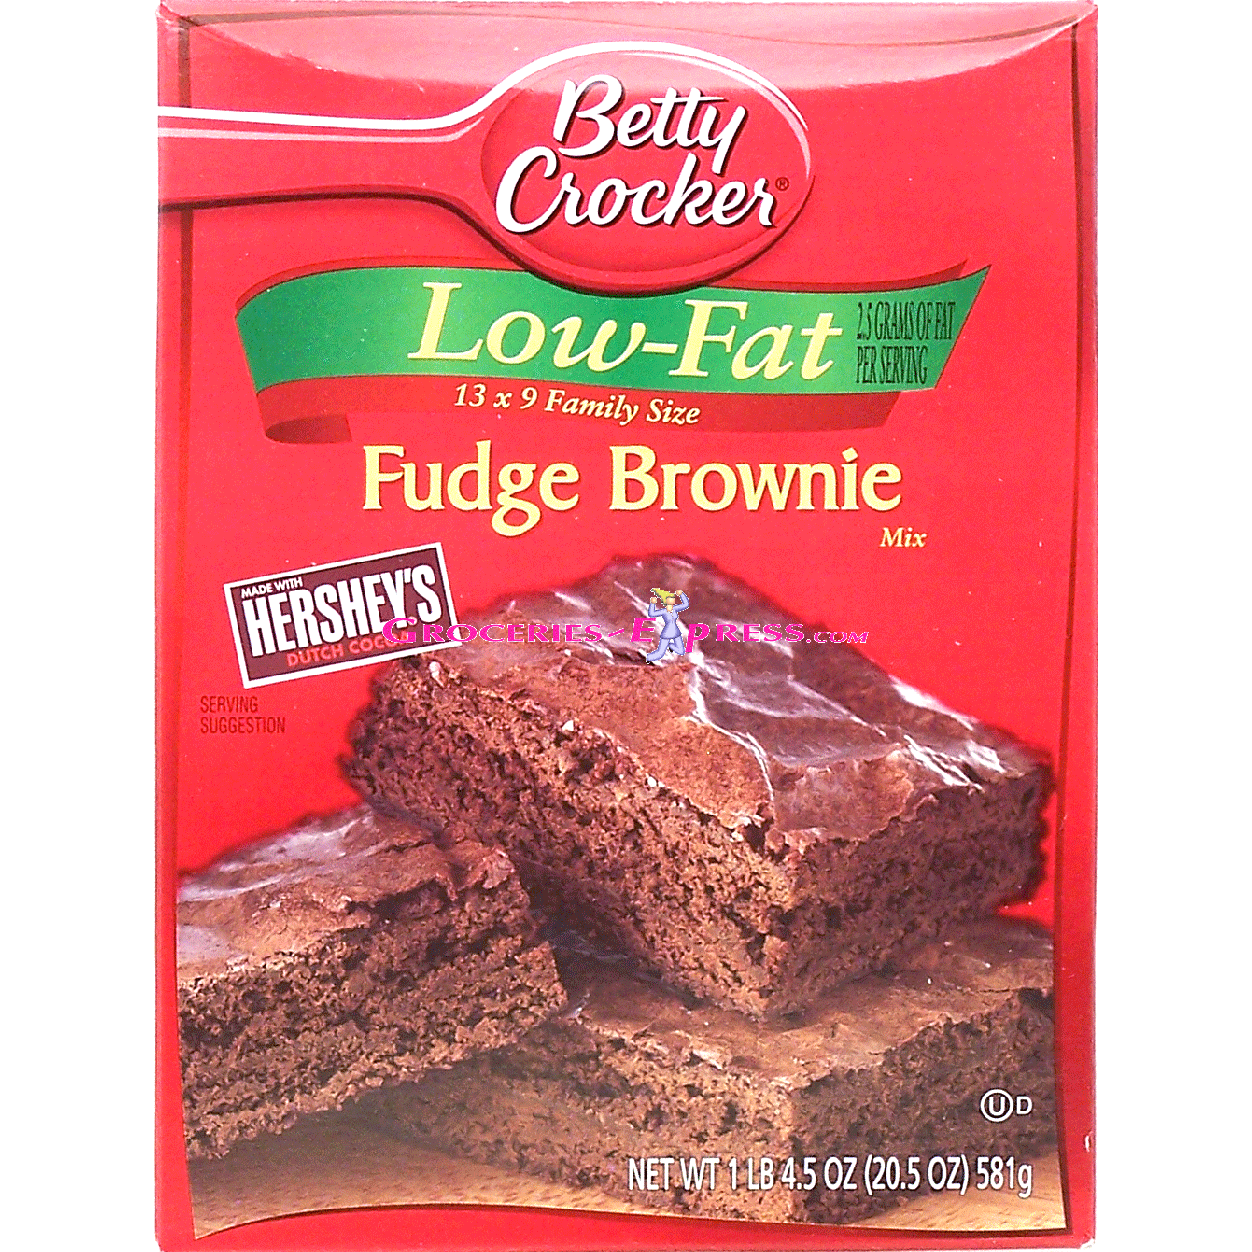 Betty Crocker Brownie Mix low fat fudge brownie mix, family size20.5oz